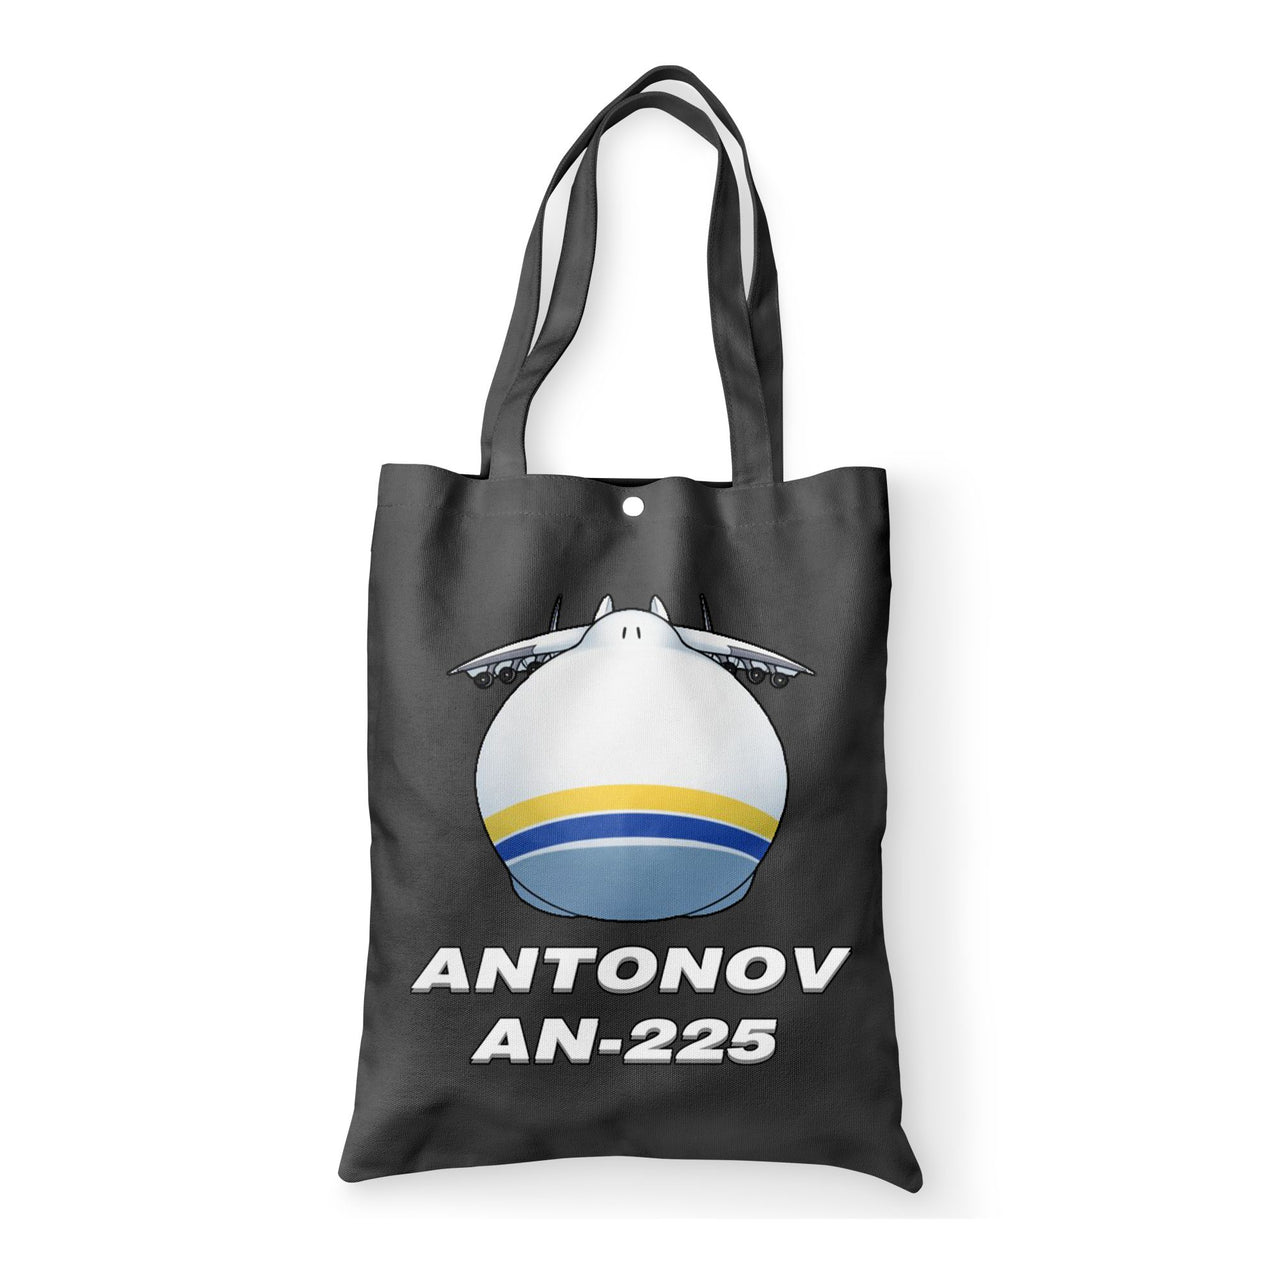 Antonov AN-225 (20) Designed Tote Bags